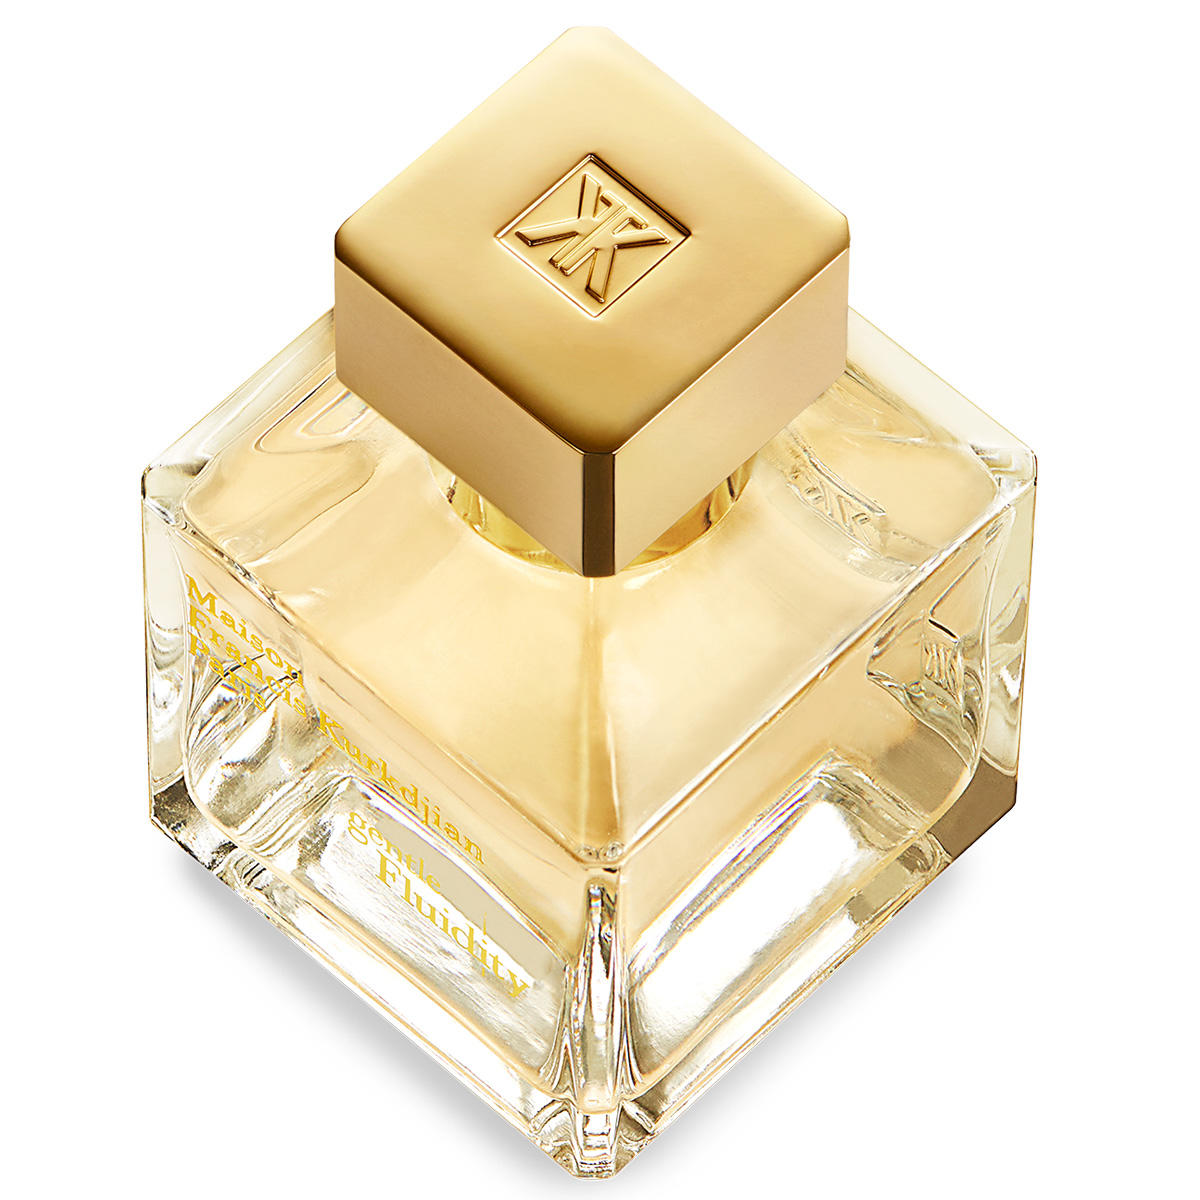 Maison Francis Kurkdjian Paris gentle Fluidity Gold Eau de Parfum 70 ml - 2